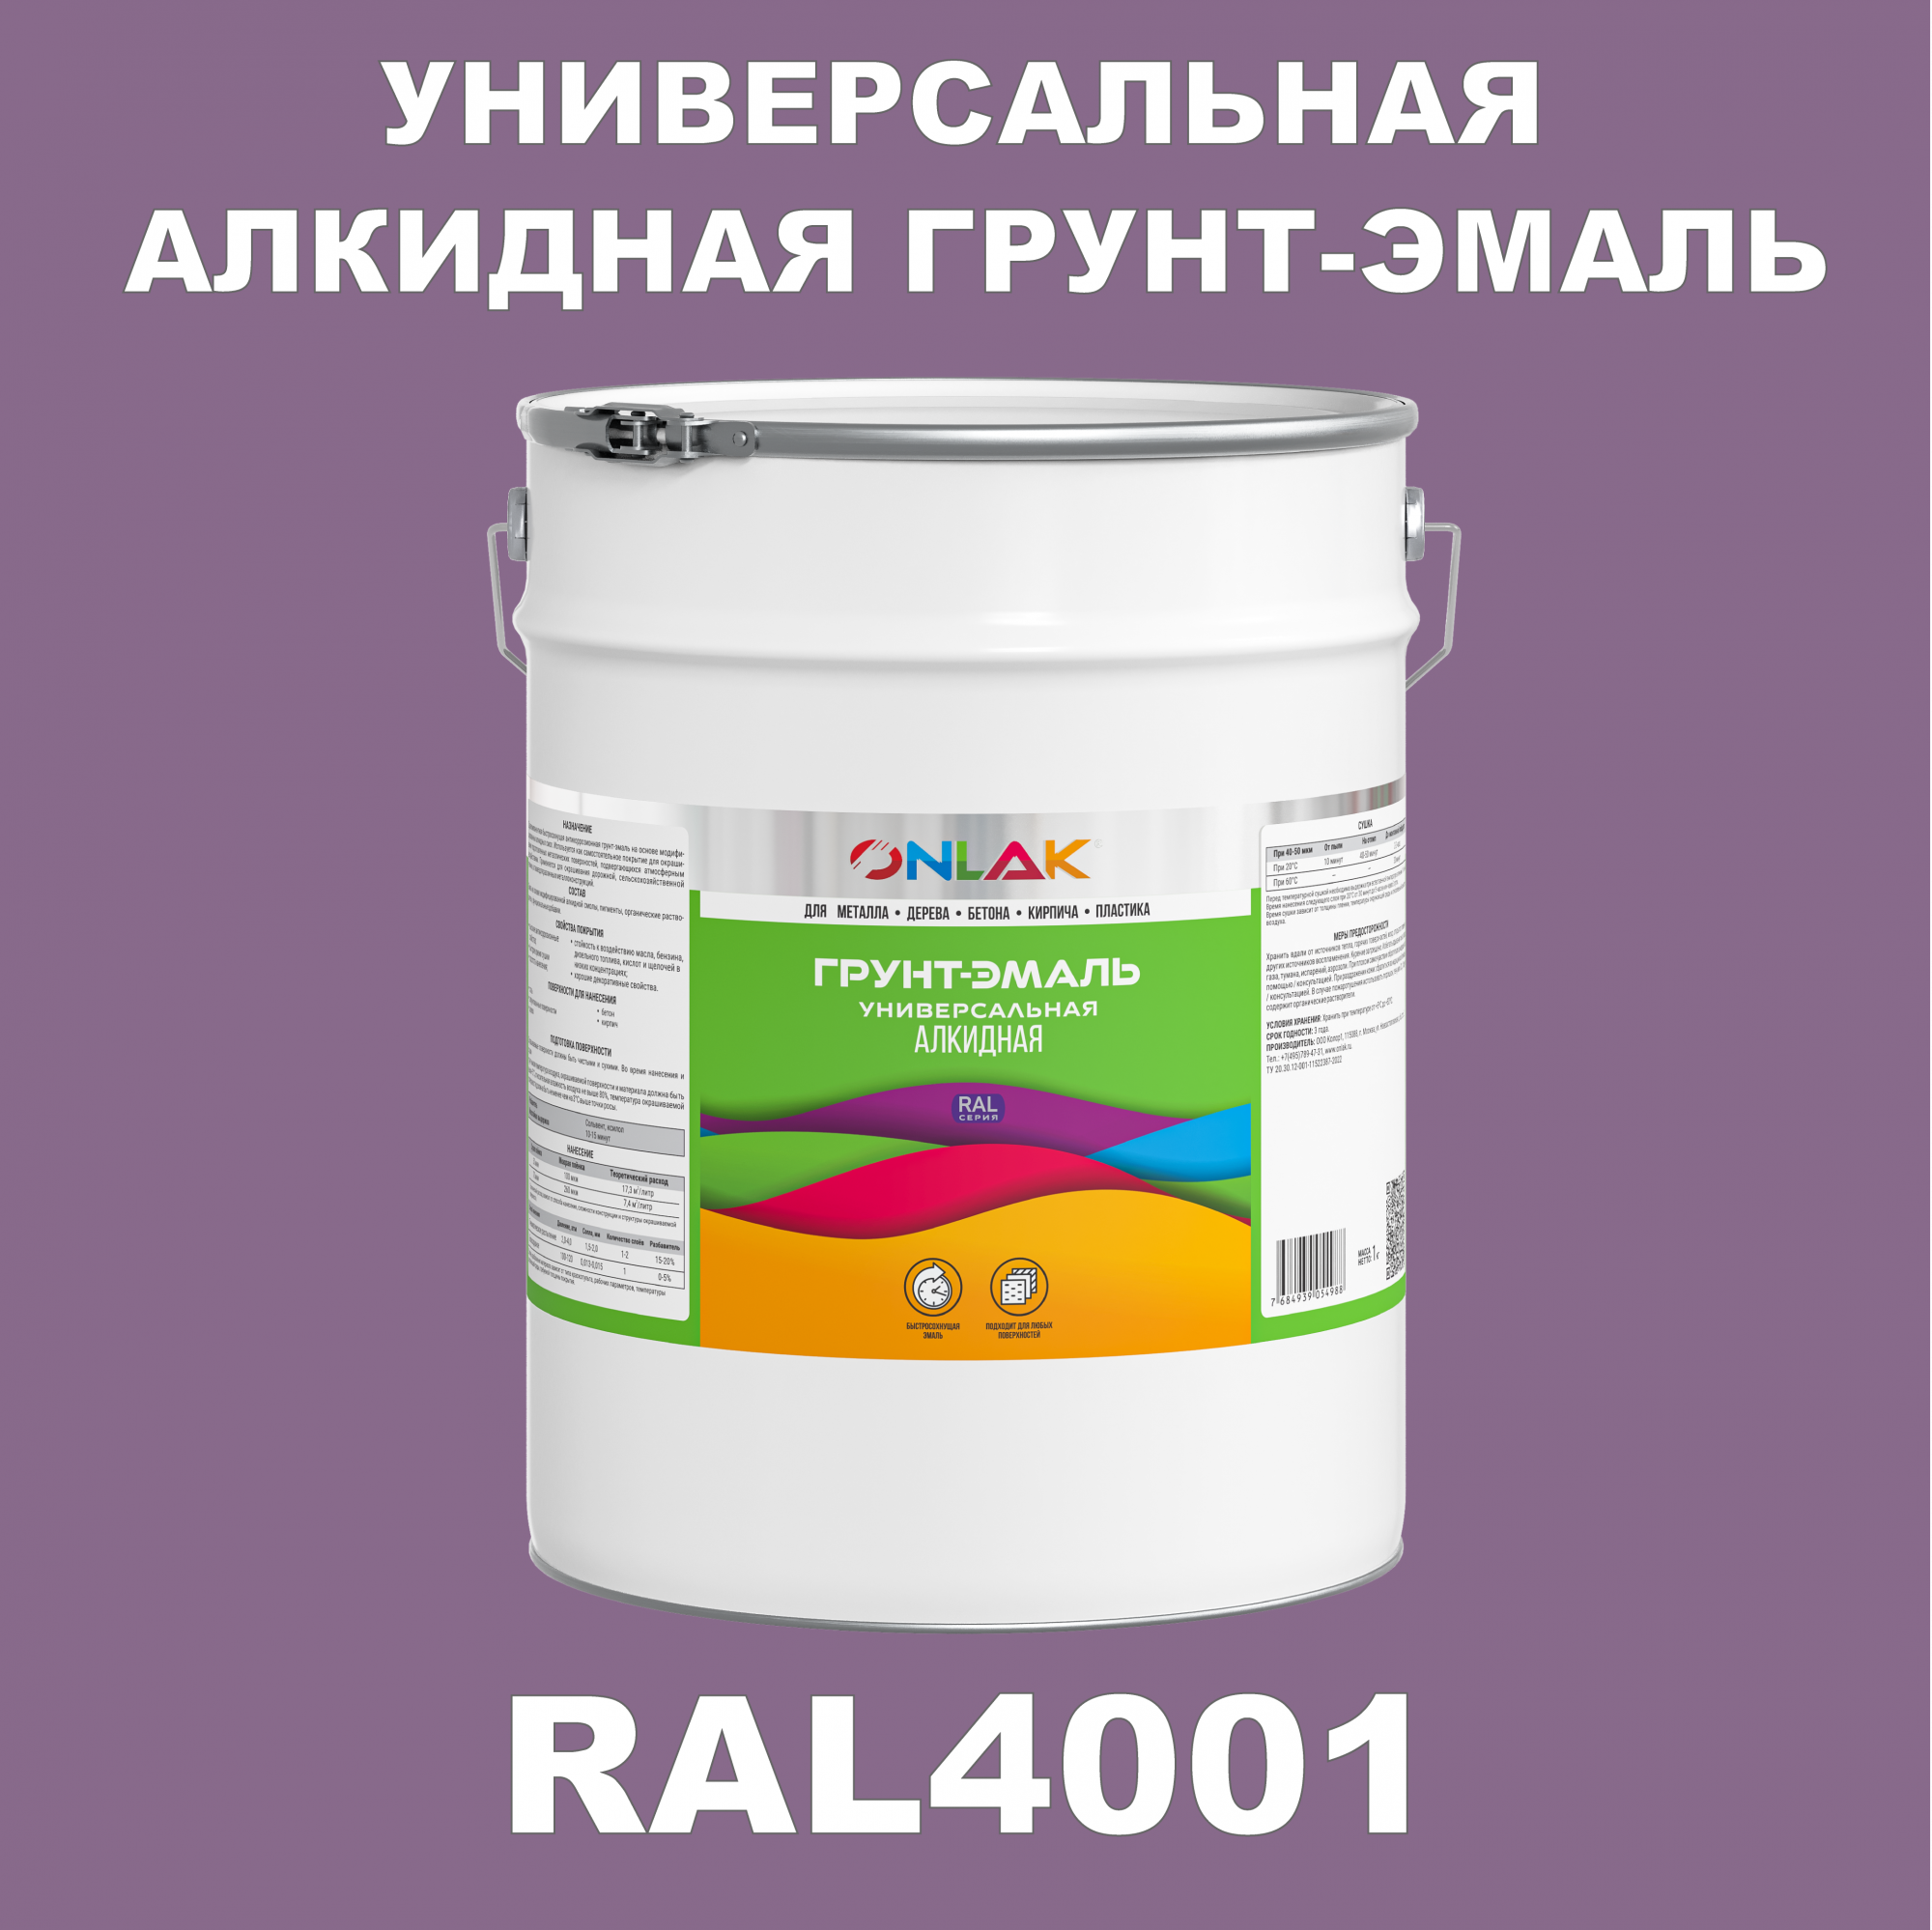 Грунт-эмаль ONLAK 1К RAL4001 антикоррозионная алкидная по металлу по ржавчине 20 кг антикоррозионная грунт эмаль onlak ral 4008 фиолетовый 610 мл